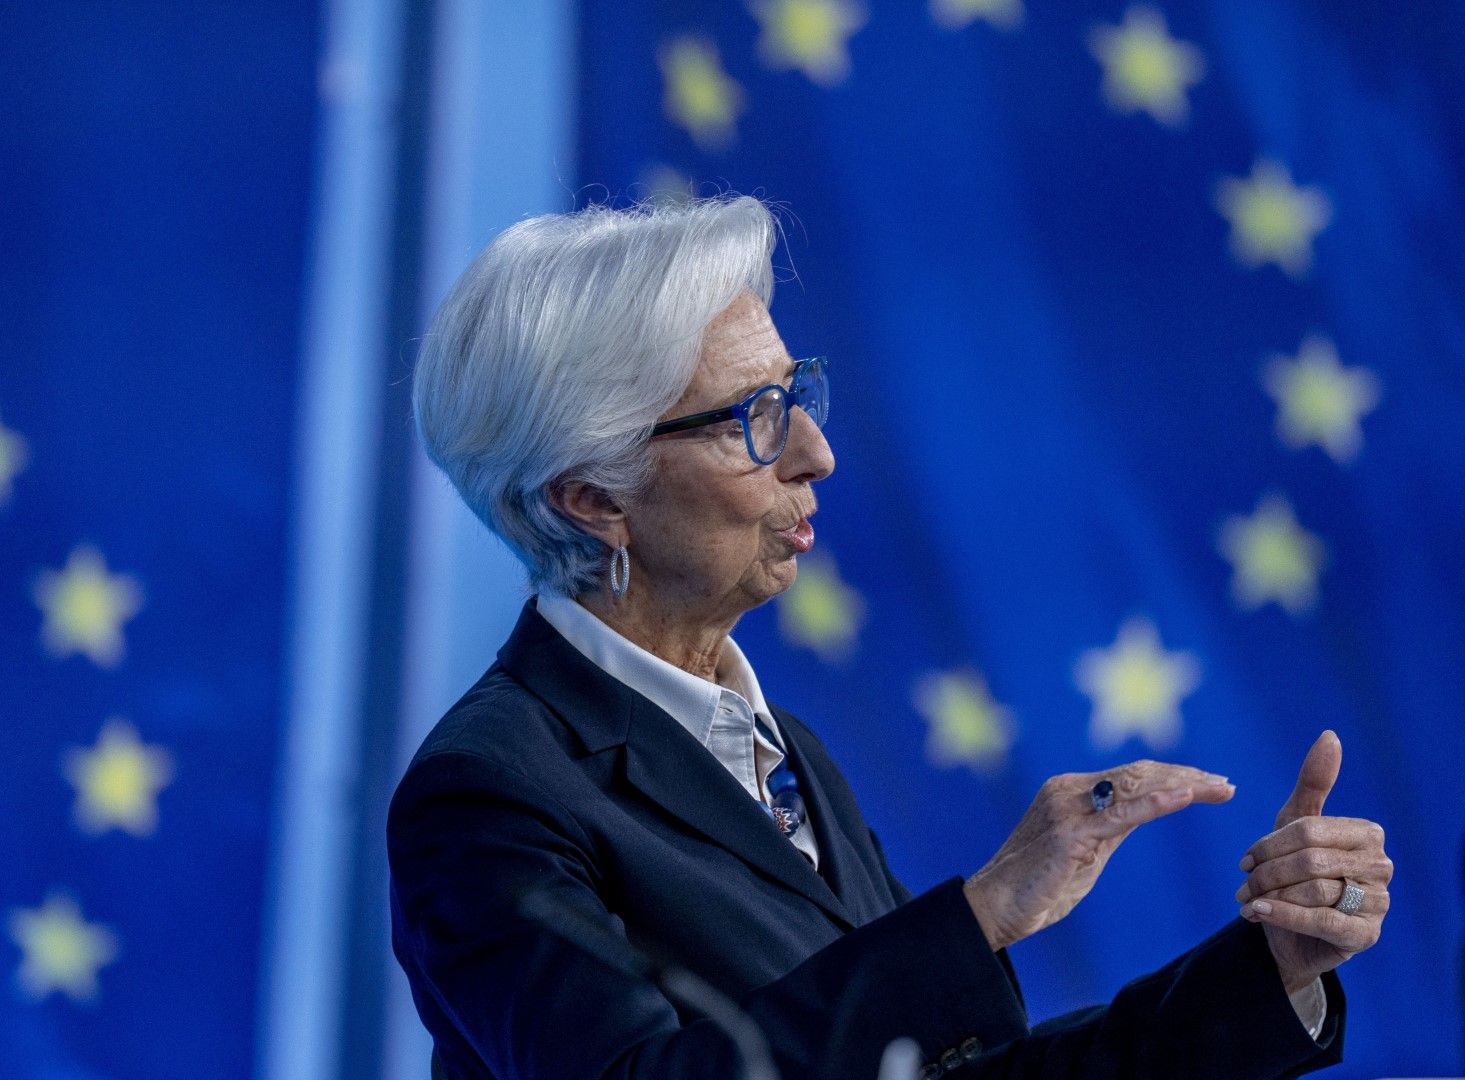 ЕЦБ е в готовност за всякакви необходими мерки, за да осигури стабилността на цените, заяви президентката на банката Кристин Лагард